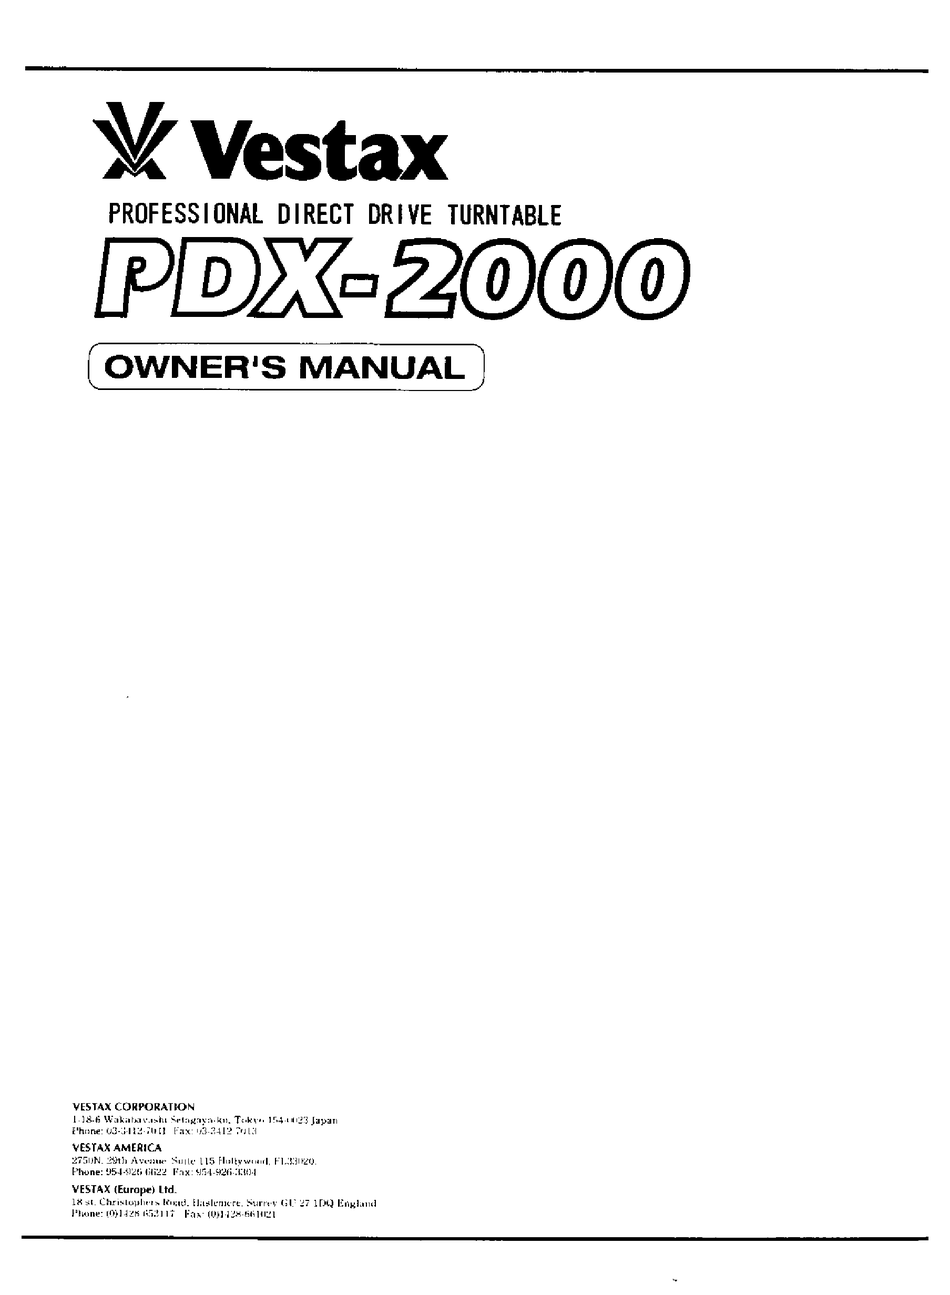 PDX-101 Online Test